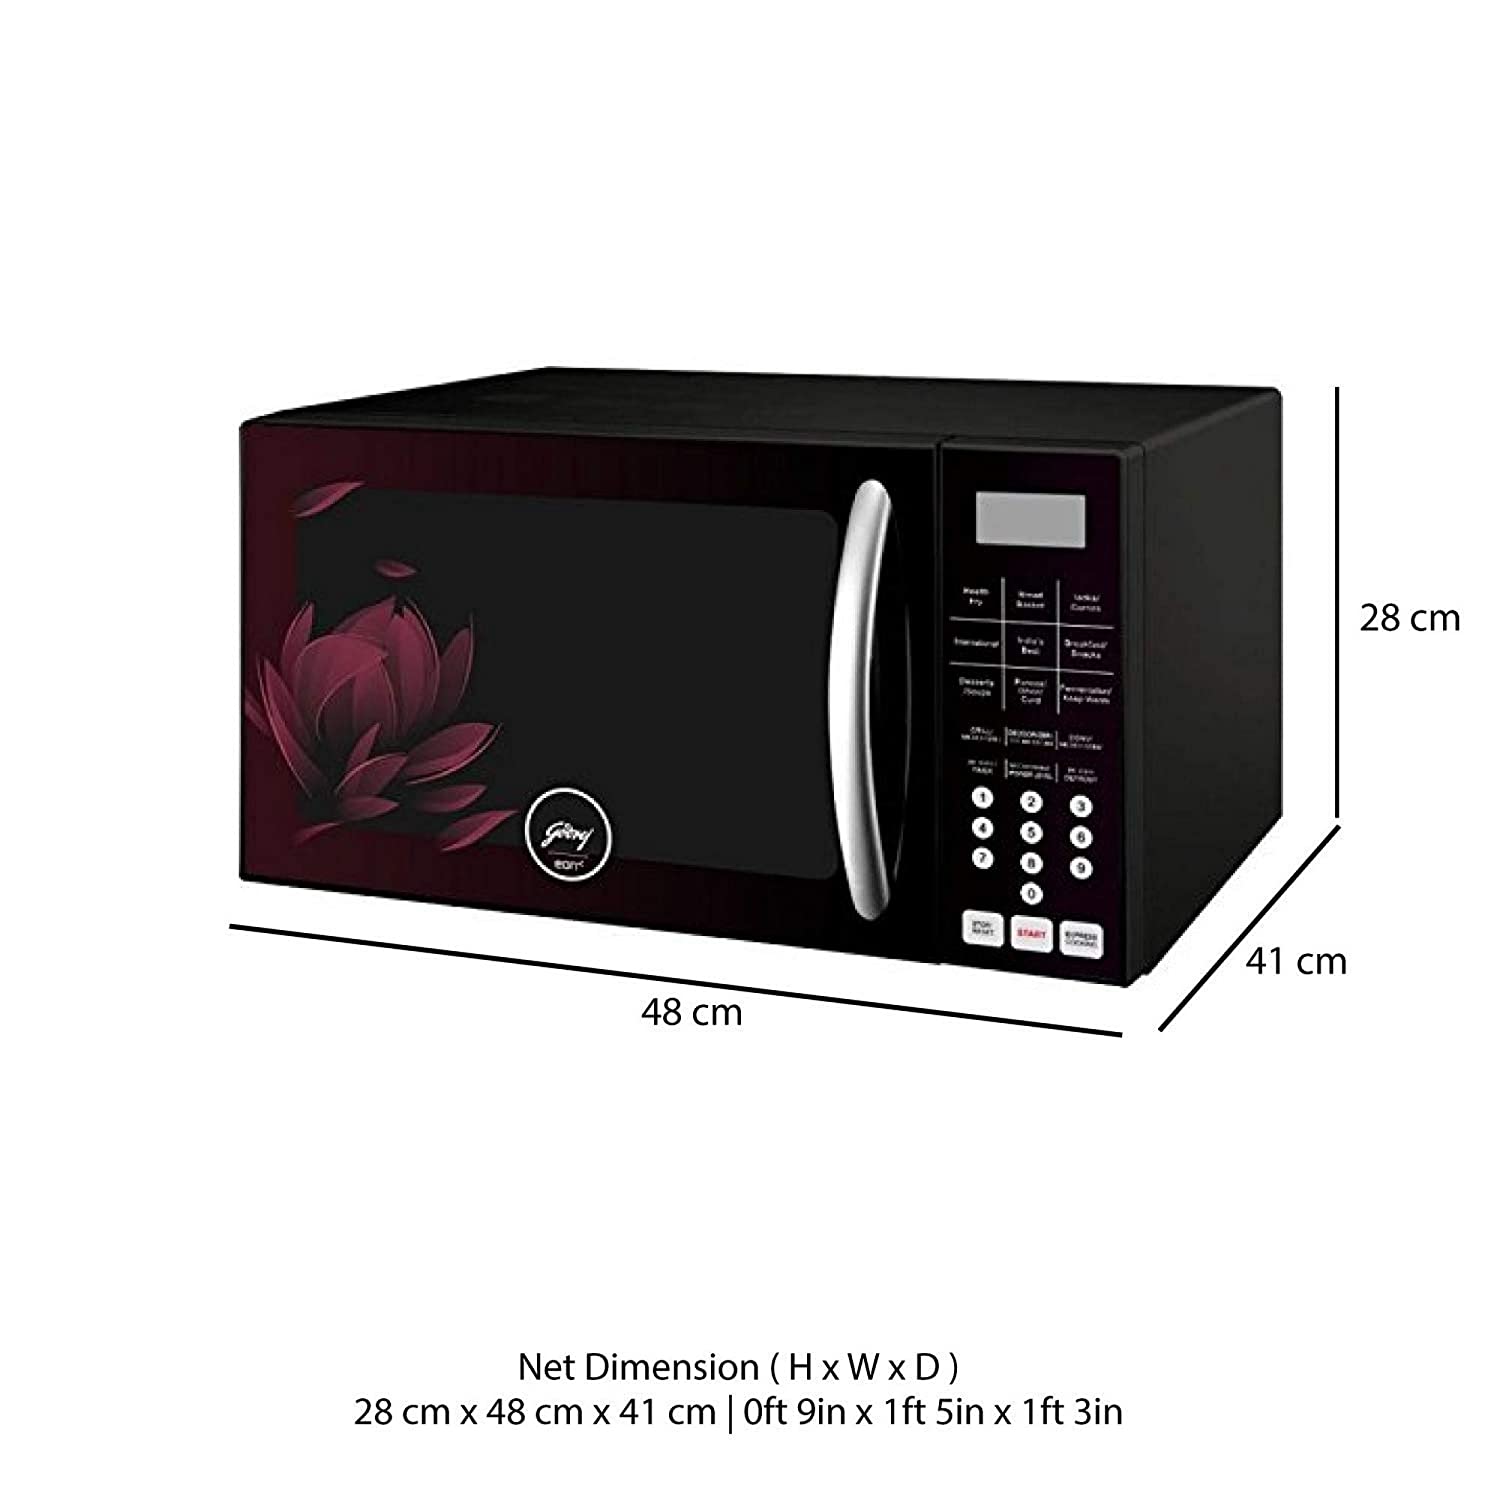 Godrej 25 L Convection Microwave Oven (GME 725 CF2 PZ, Purple Petals) - Mahajan Electronics Online